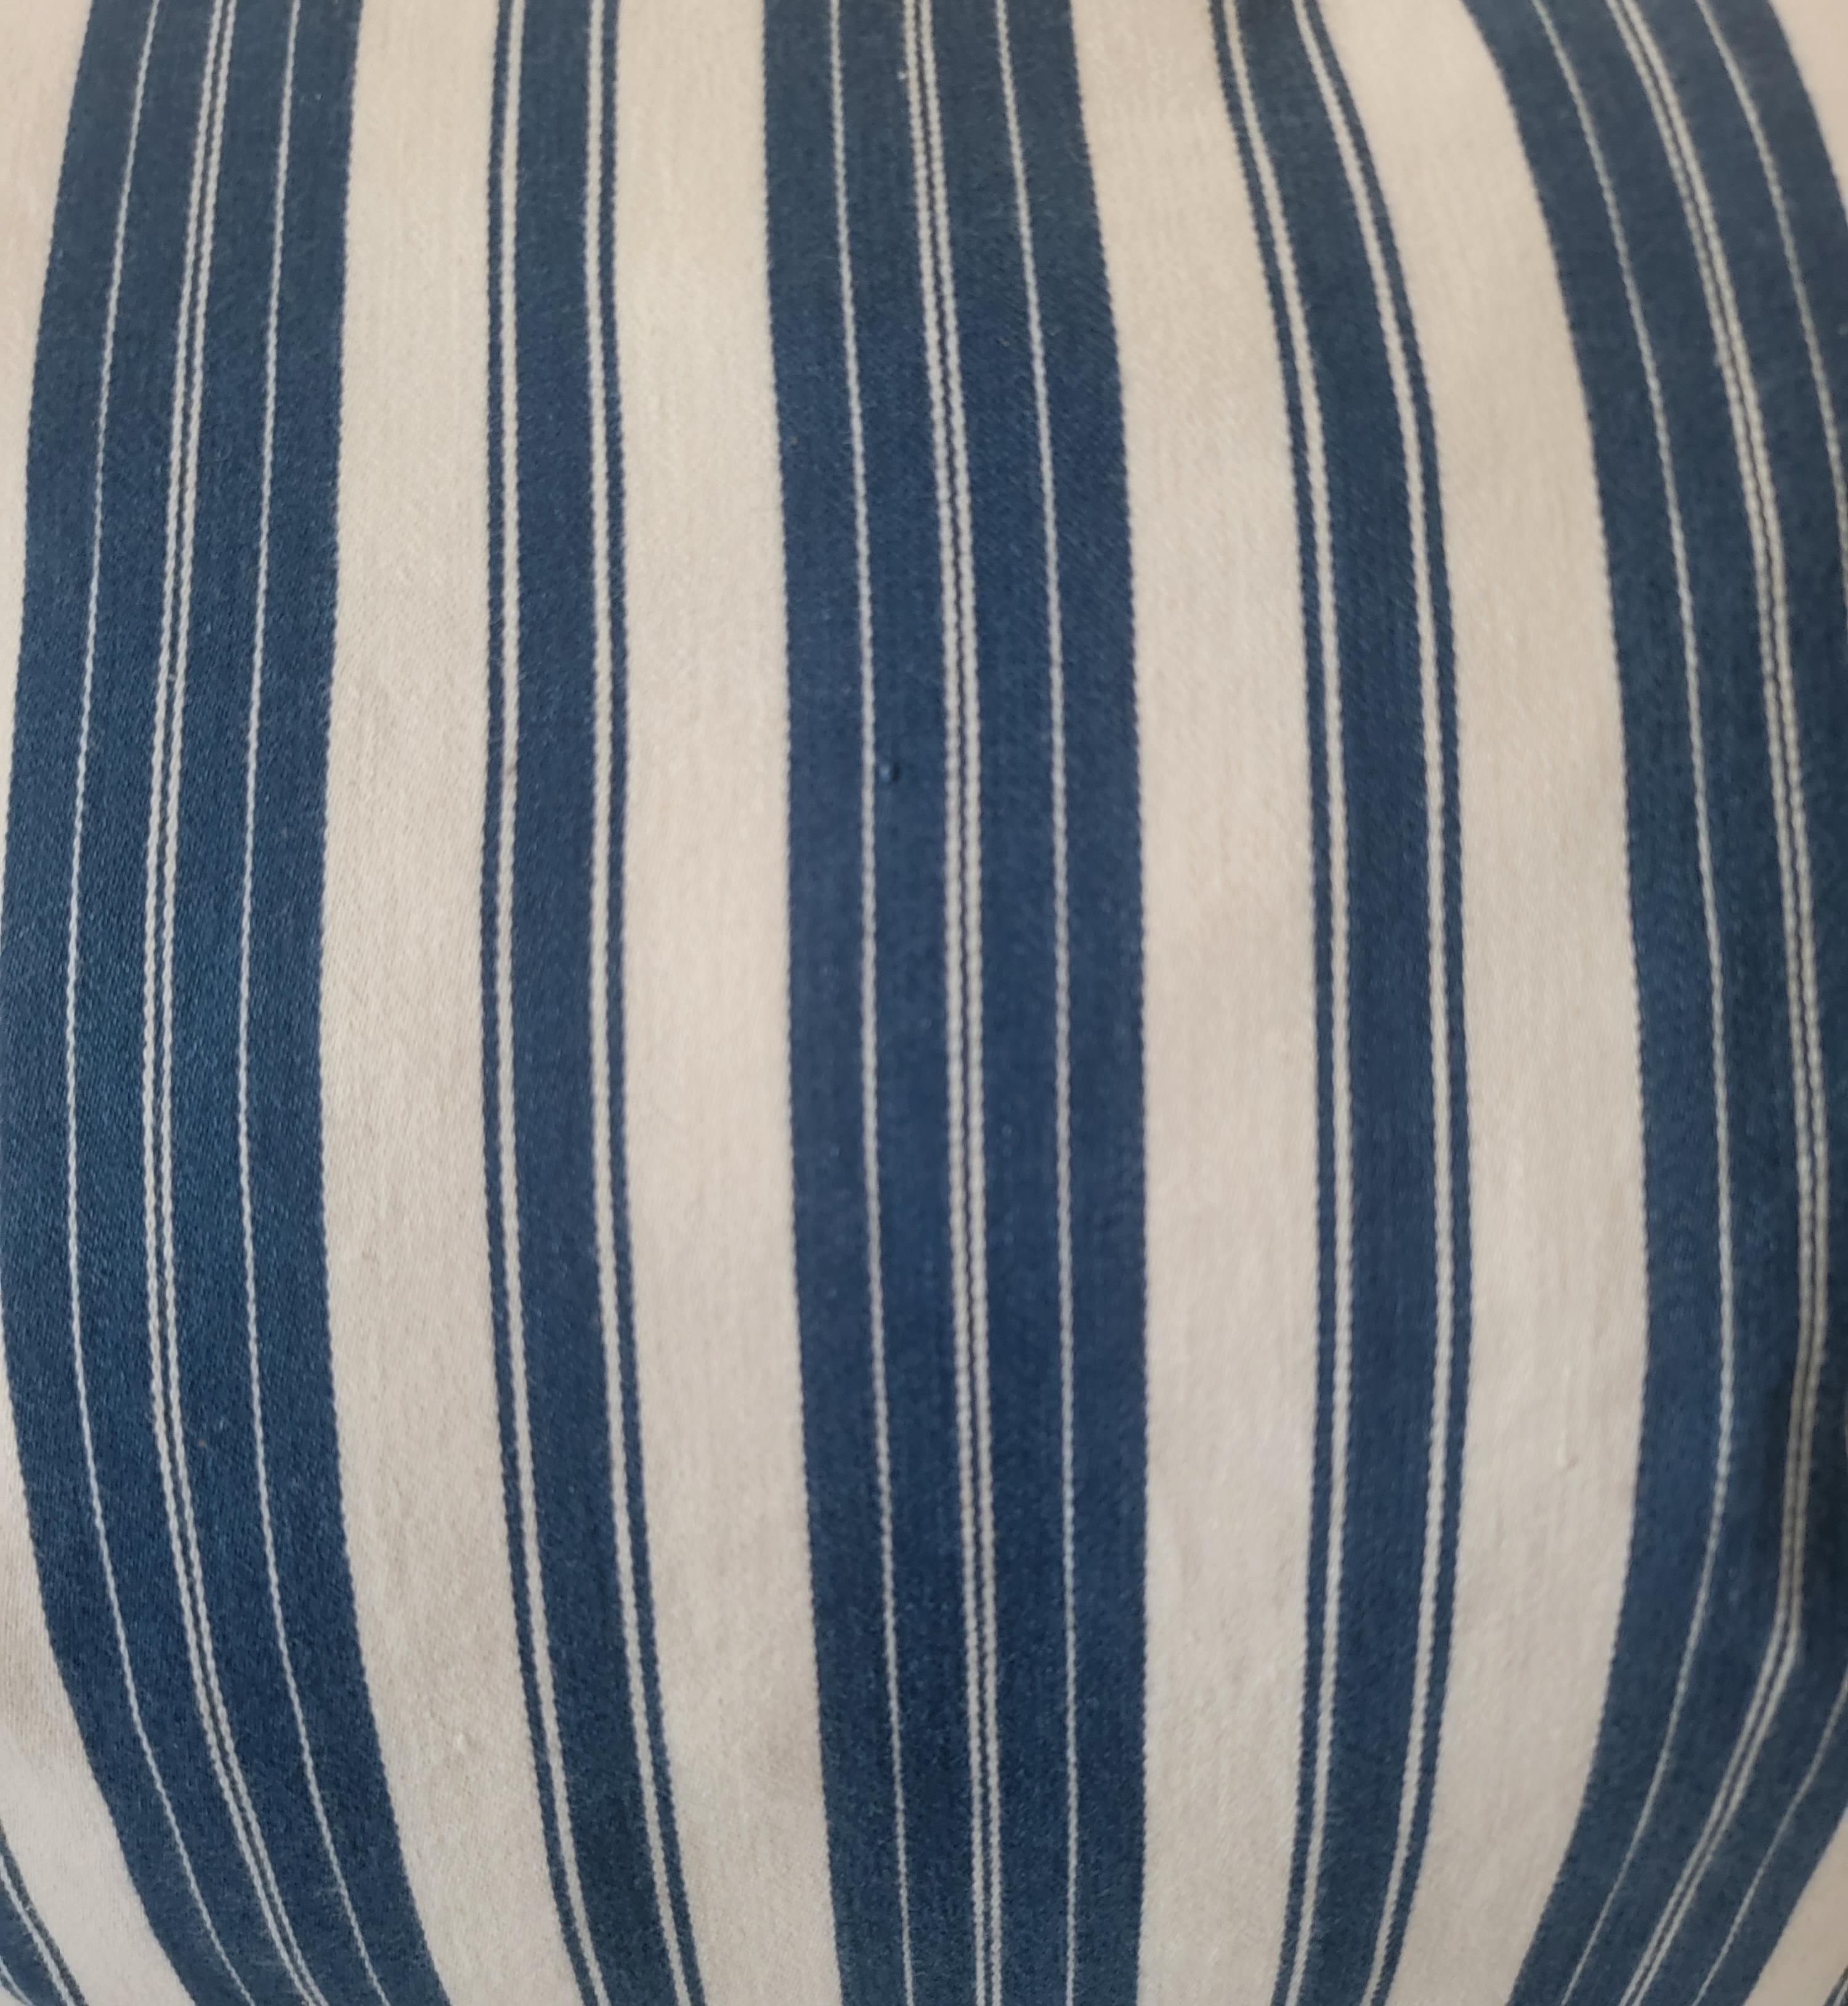 Blau-weiß gestreifte Inlettkissen aus dem 19. Jahrhundert mit Leinenrücken und Daunen- und Federeinlagen. Die blauen Streifen sind in diesem Set sehr präsent. Die kräftige blaue Farbe und der dicke Streifen sorgen dafür, dass die blauen Streifen die